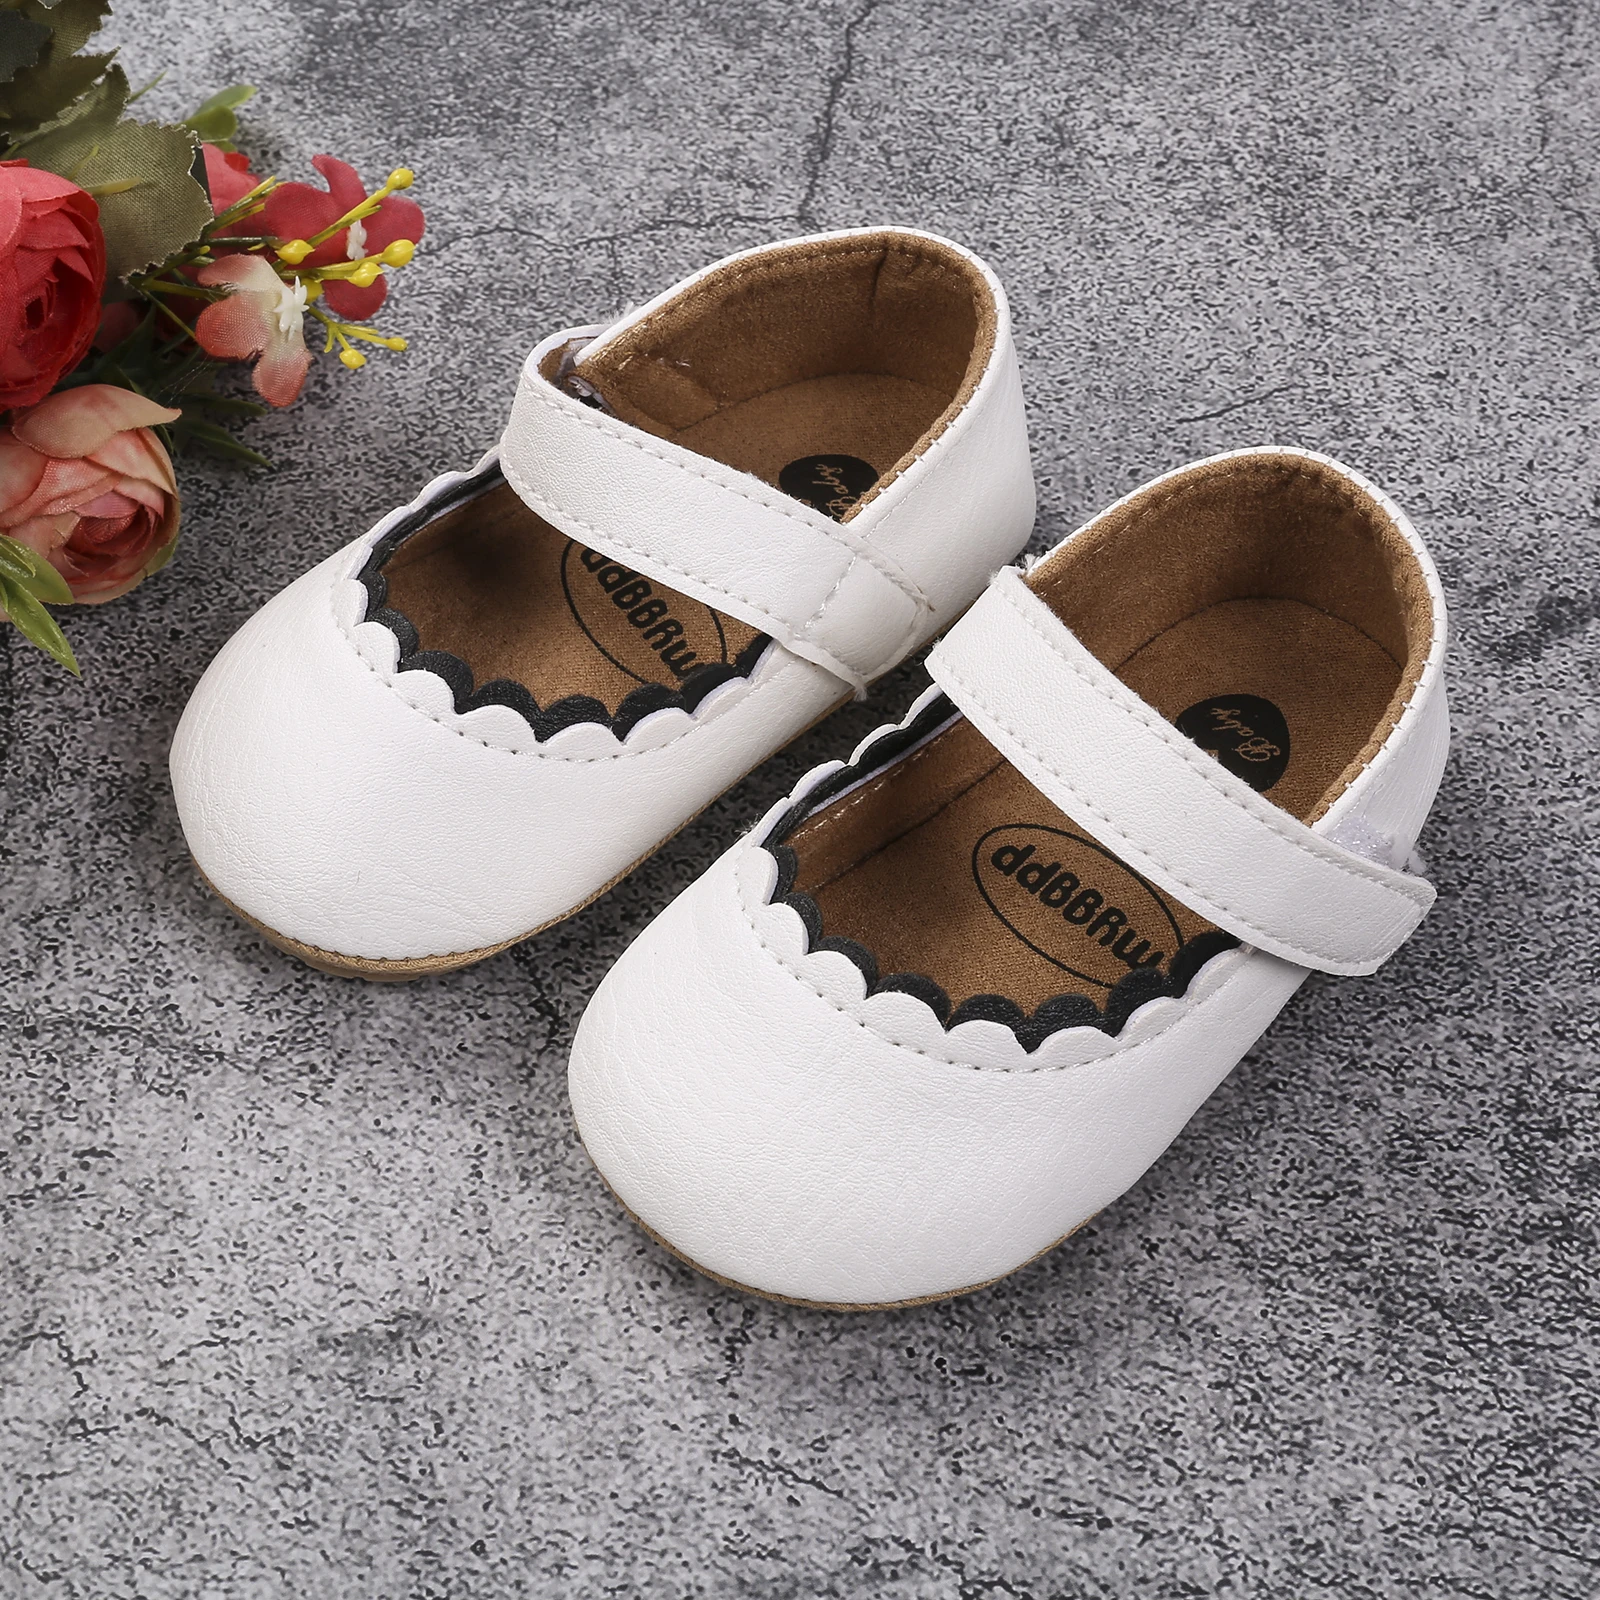 Обувь для новорожденных принцесс, однотонные ходунки для малышей с крючком и петлей (белый, коричневый, черный, лимонно-желтый)